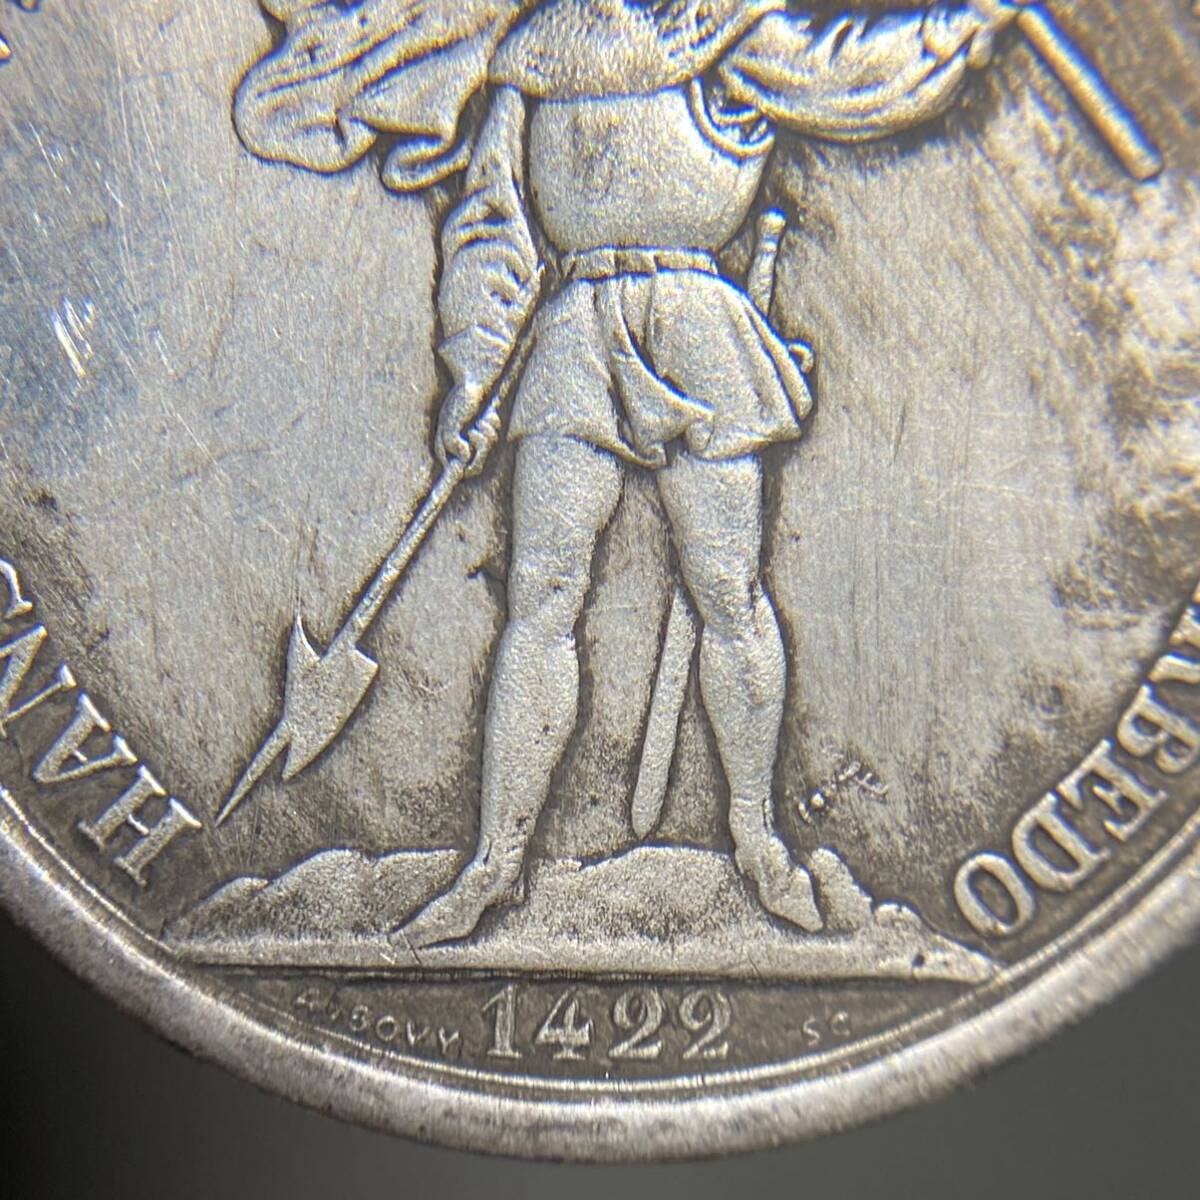 スイス古銭 狩猟祭記念銀貨 約26.80g 1422年銘 5フラン 一円貨幣 硬貨骨董品コインコレクション の画像4